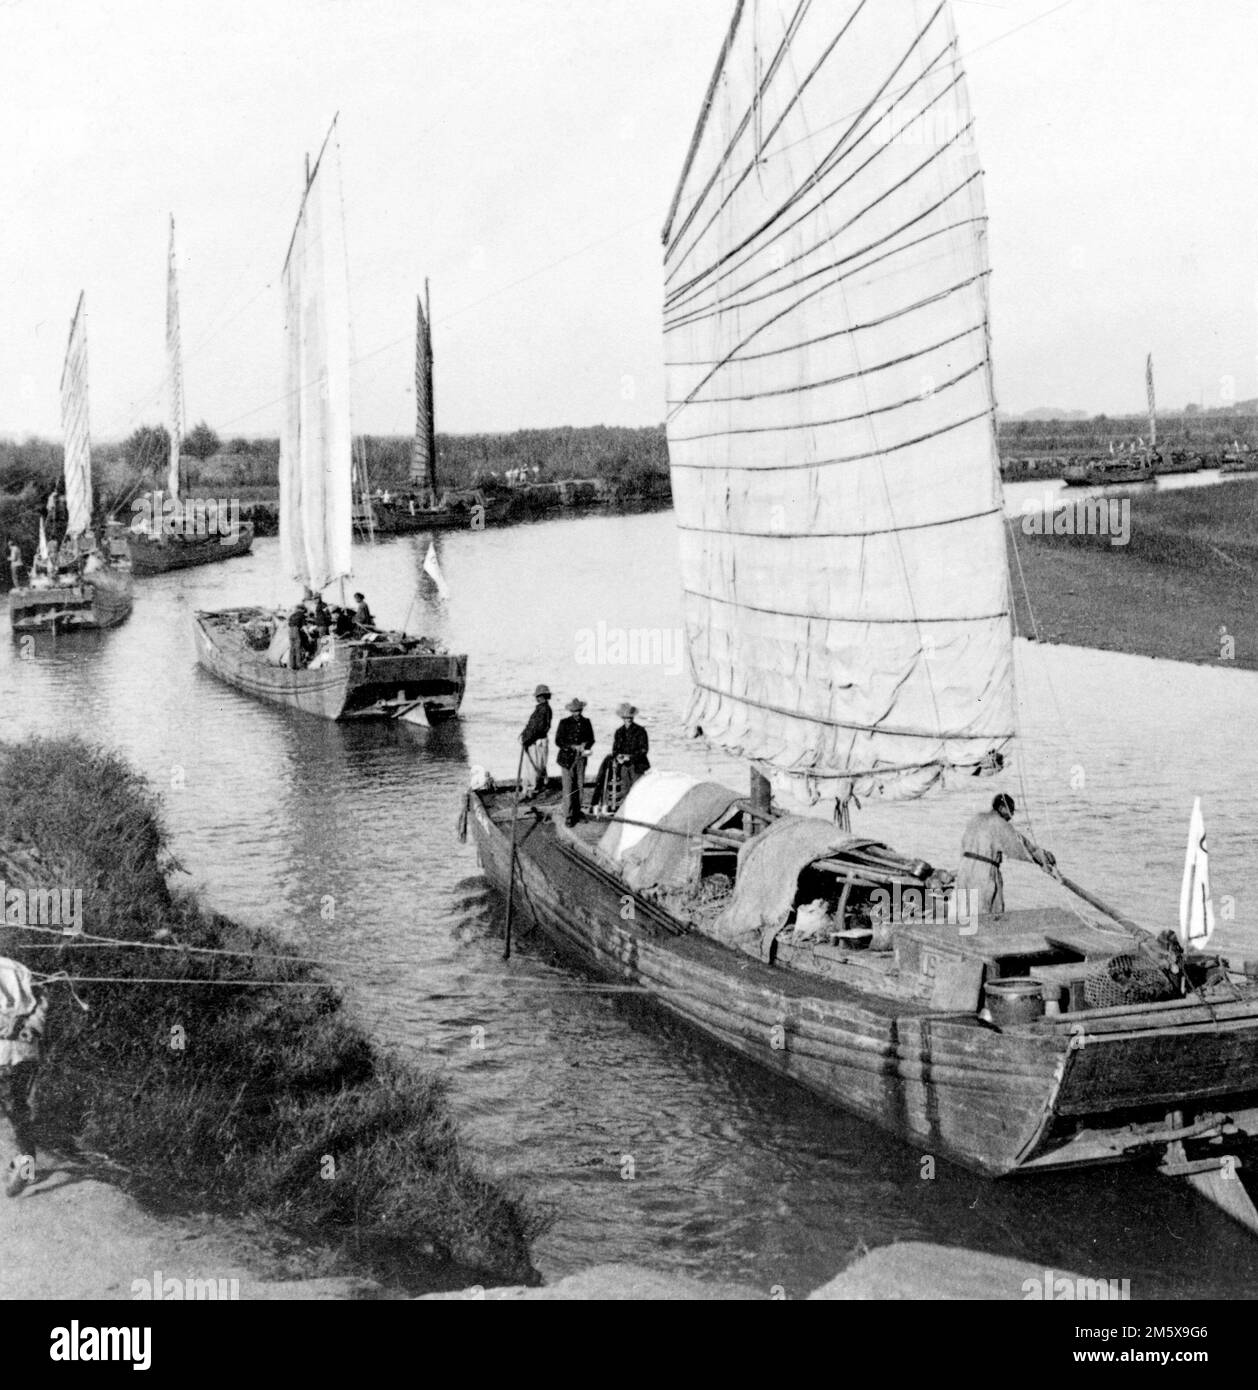 Ribellione di Boxer. Junk flotilla sul fiume Peiho - trasportando gli Stati Uniti Negozi dell'esercito da Tientsin a Pechino, Cina. Foto di Underwood e Underwood, 1900 Foto Stock